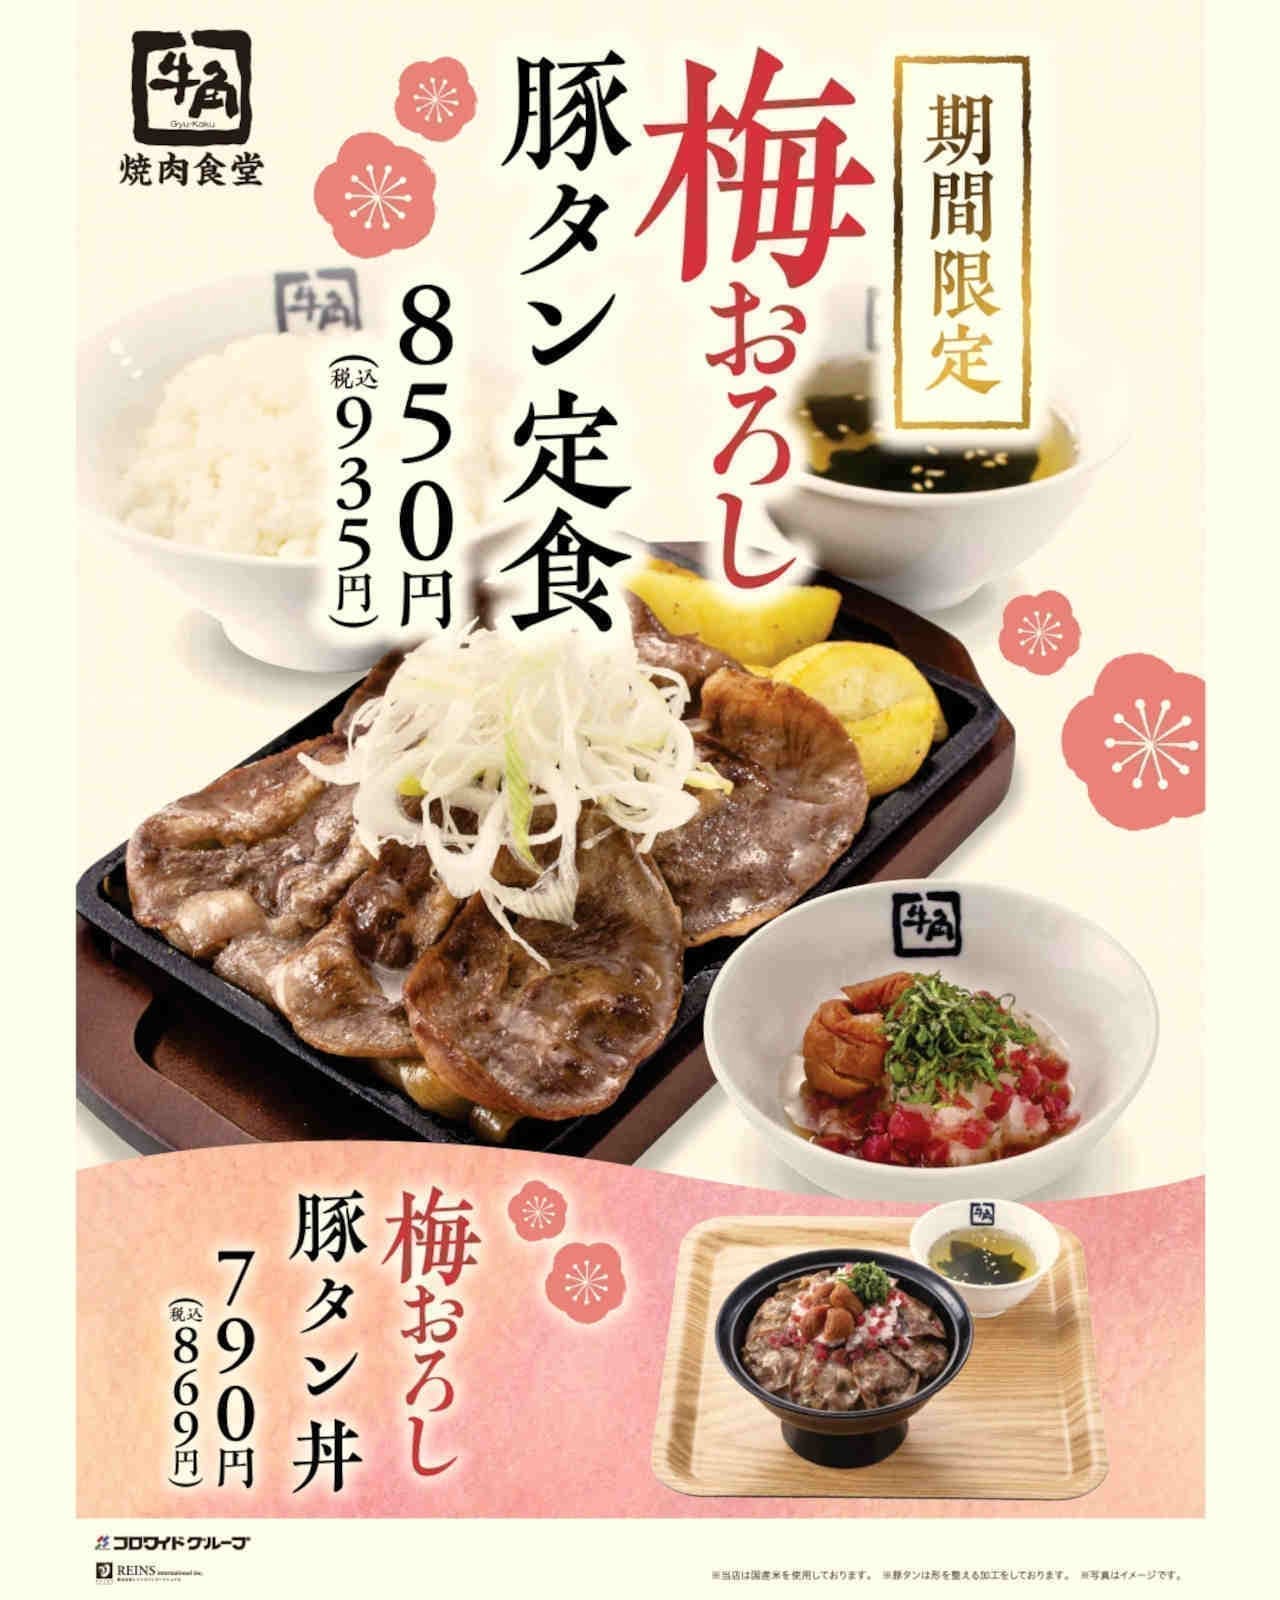 Gyukaku Yakiniku Shokudo "Ume grated pork tongue set meal" and "Ume grated pork tongue bowl".